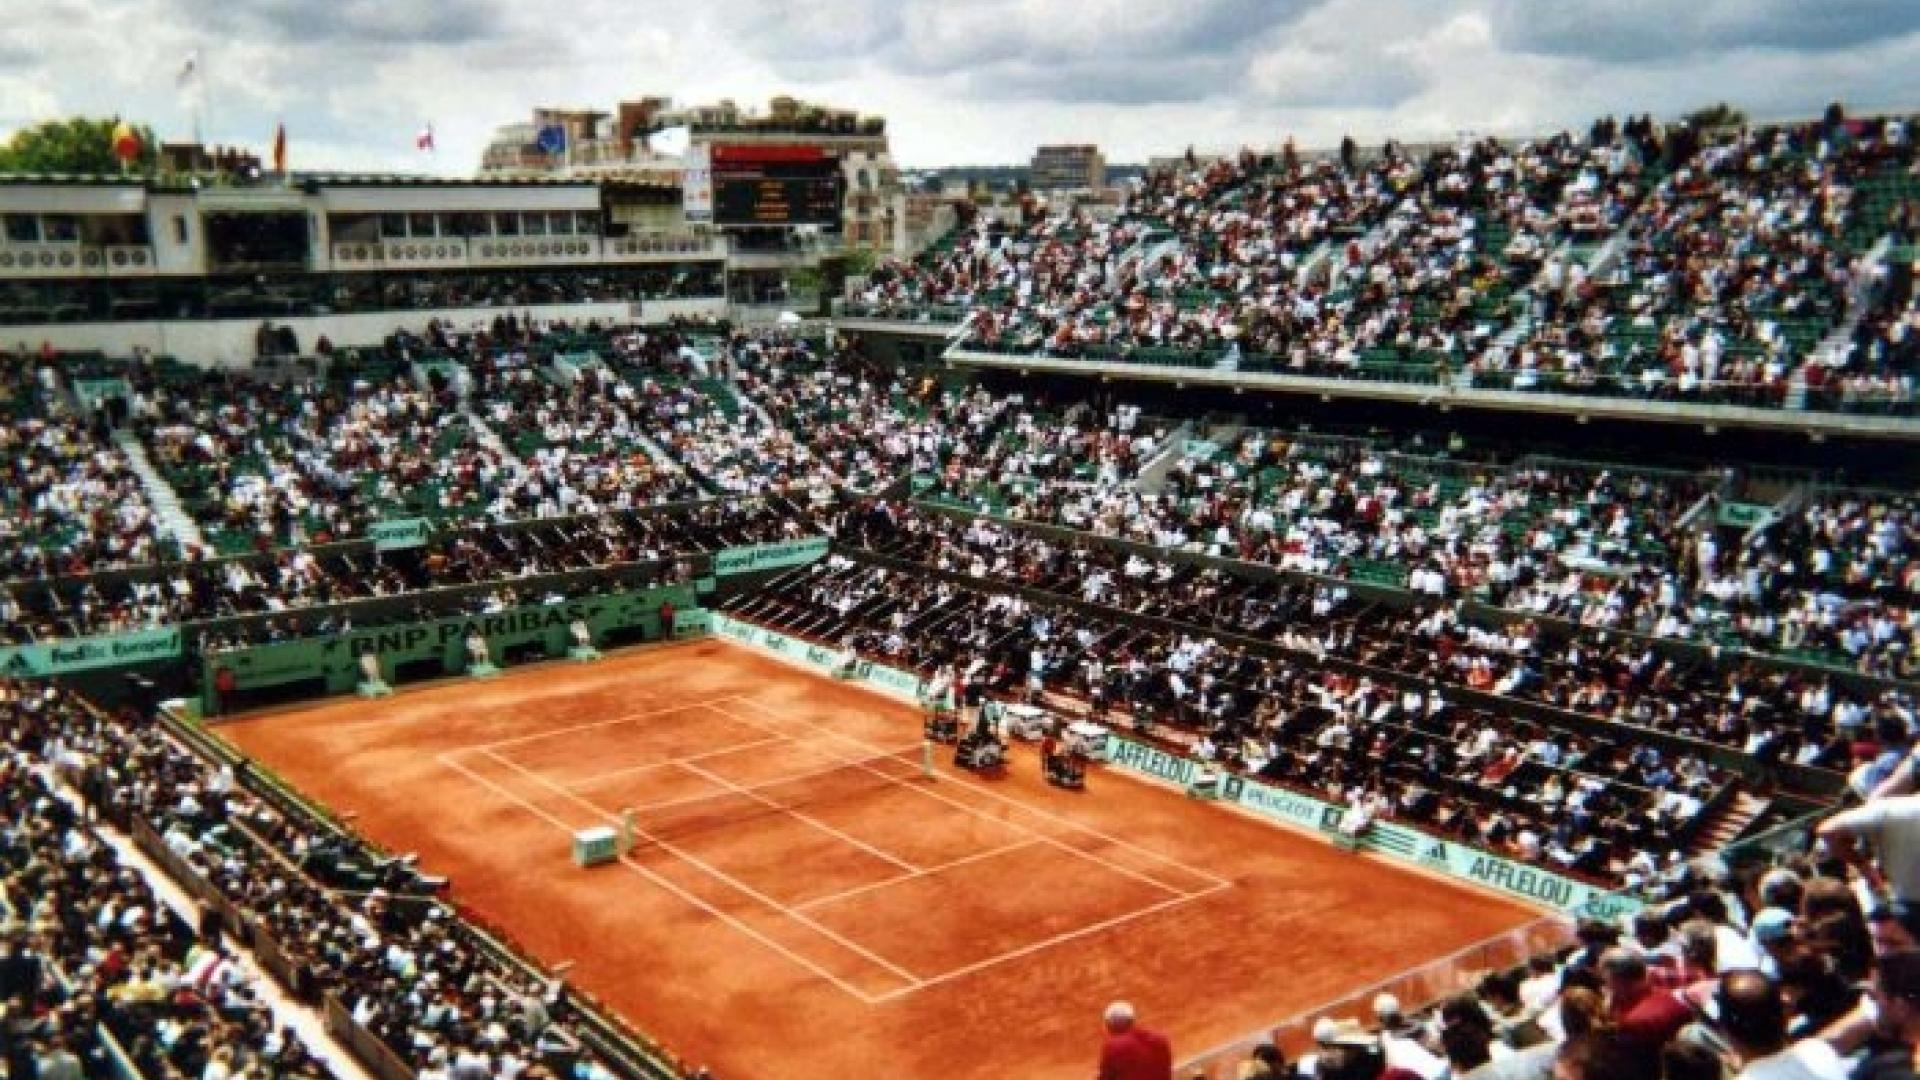 A major tennis event at the Stade Roland Garros